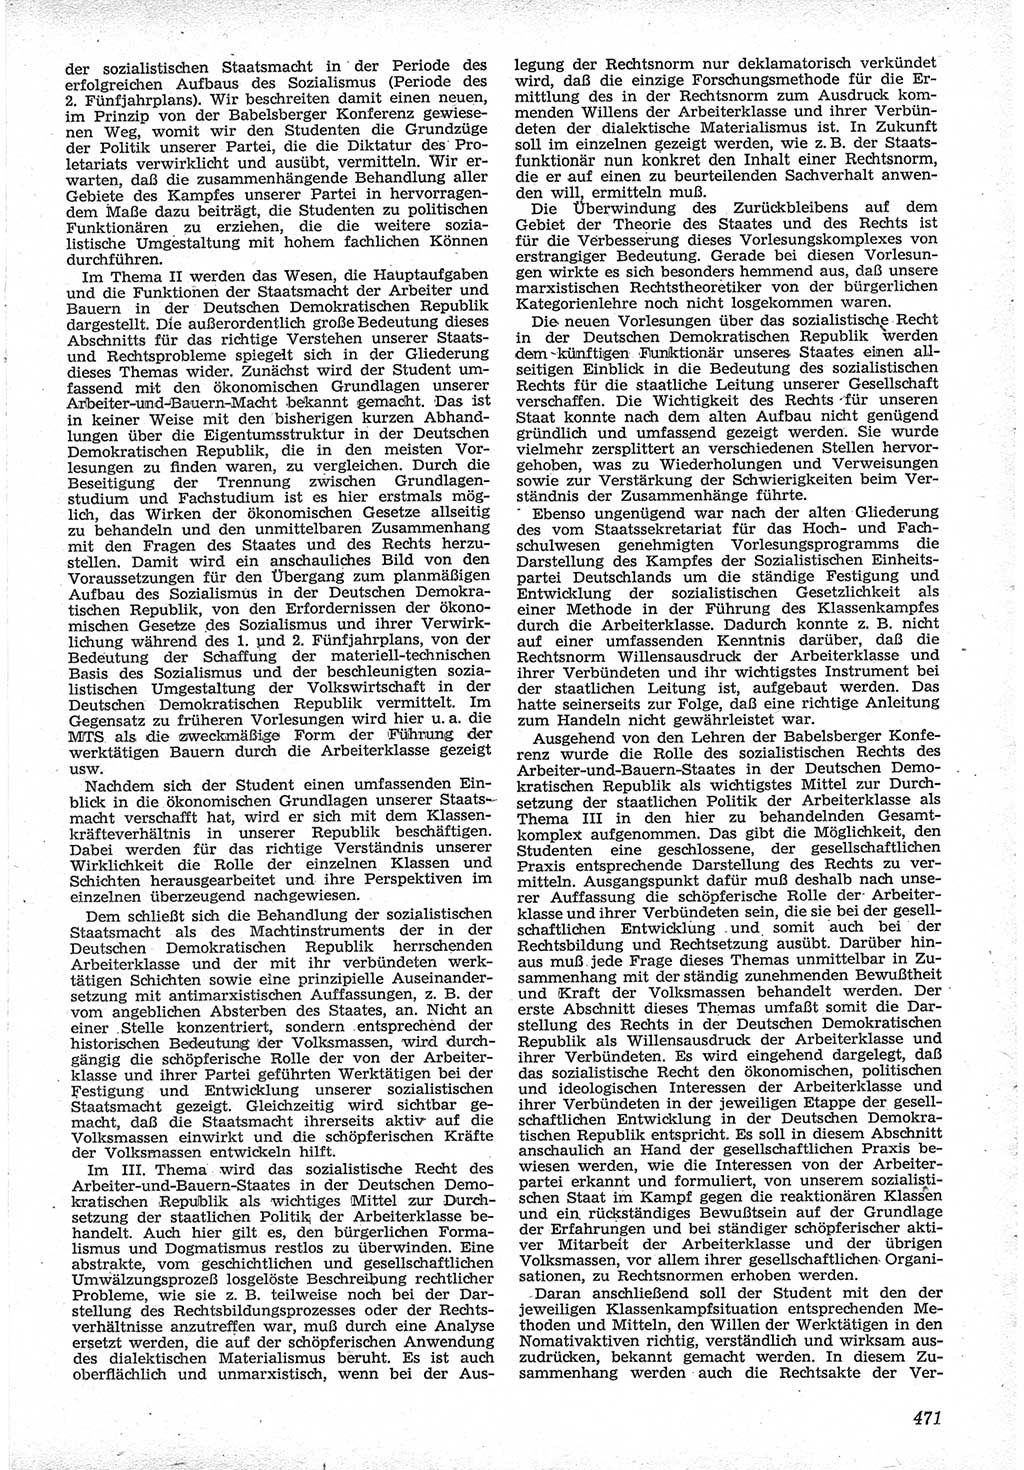 Neue Justiz (NJ), Zeitschrift für Recht und Rechtswissenschaft [Deutsche Demokratische Republik (DDR)], 12. Jahrgang 1958, Seite 471 (NJ DDR 1958, S. 471)